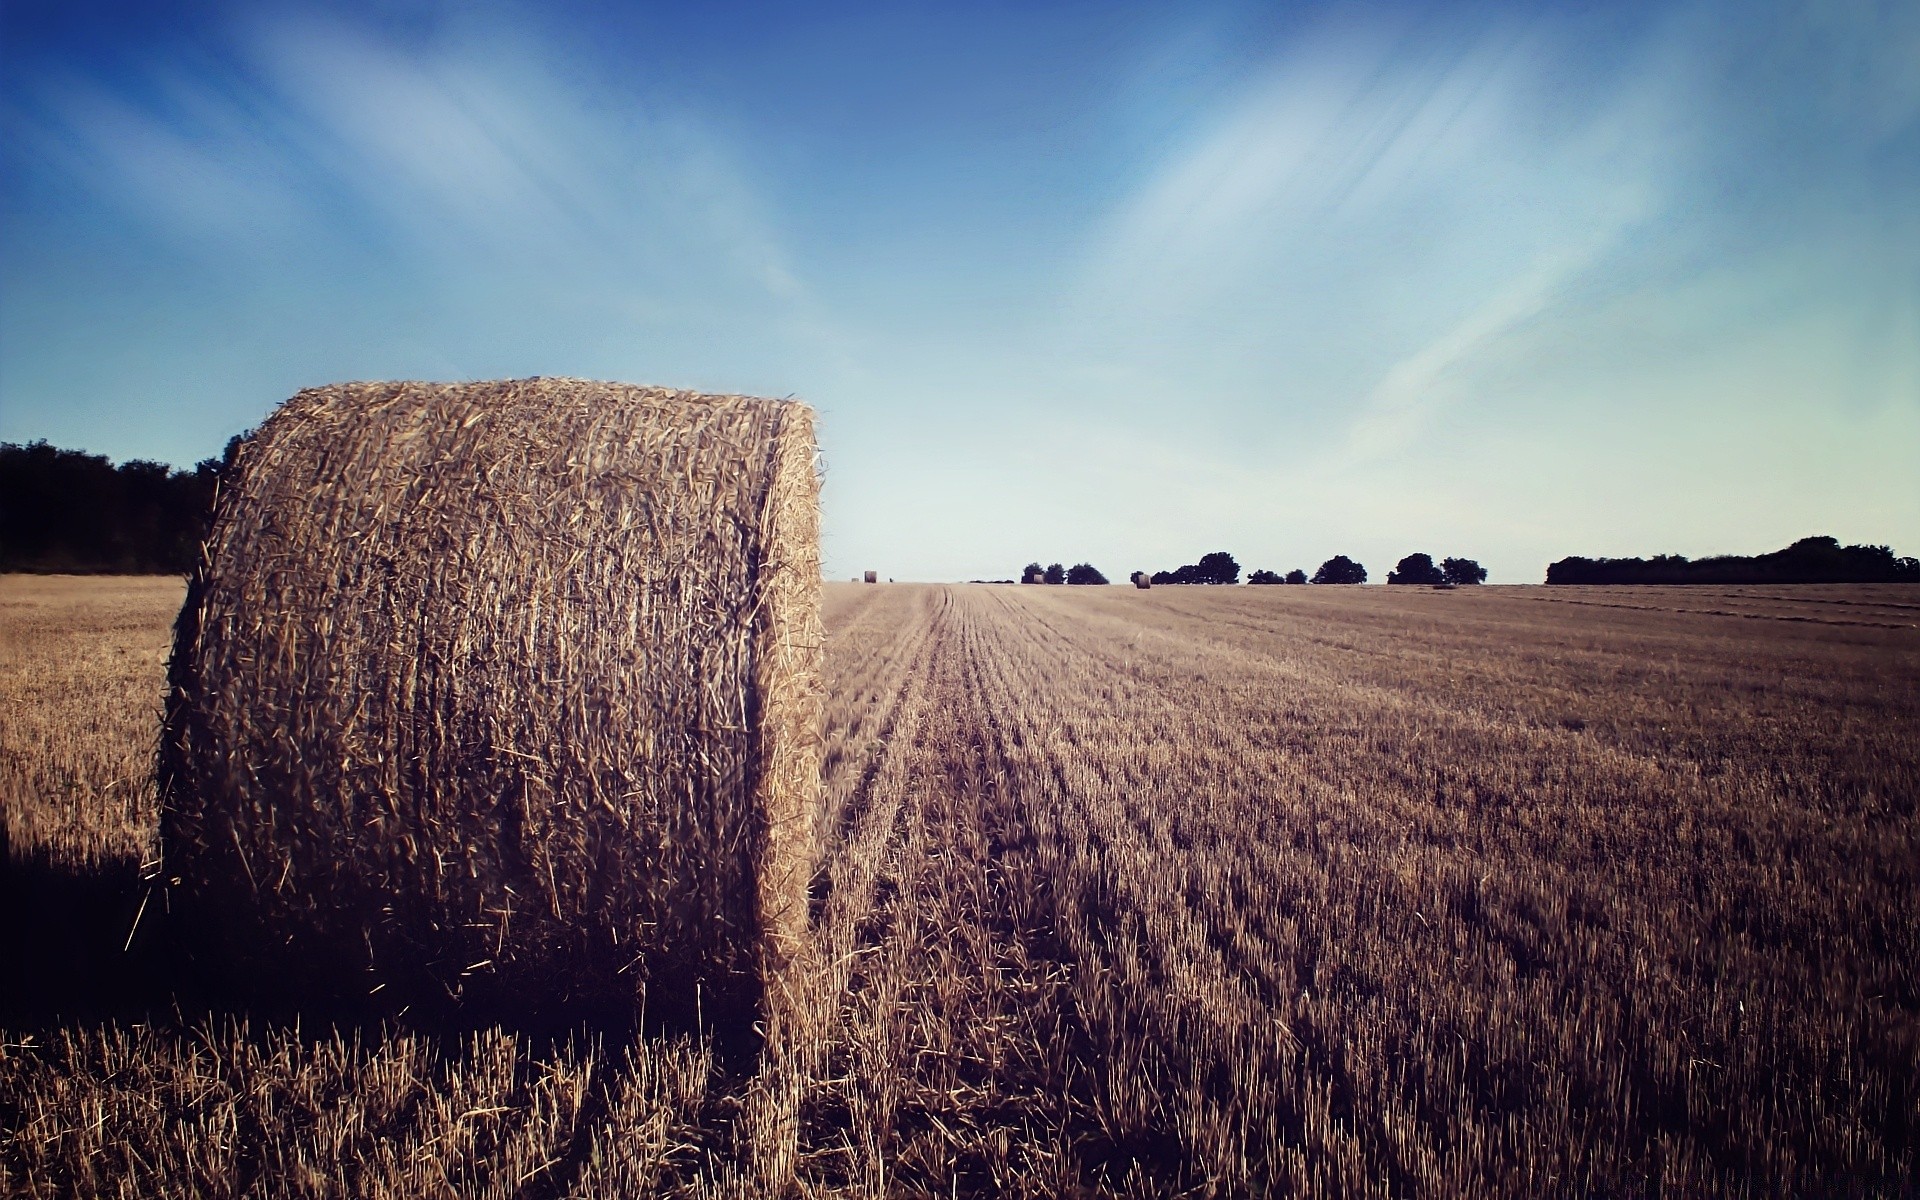 креатив сельское хозяйство пшеницы сено пейзаж ферма соломы хлопья сельских небо поле пастбище на открытом воздухе сельской местности урожай возделываемые земли природа кукуруза бэйл осень